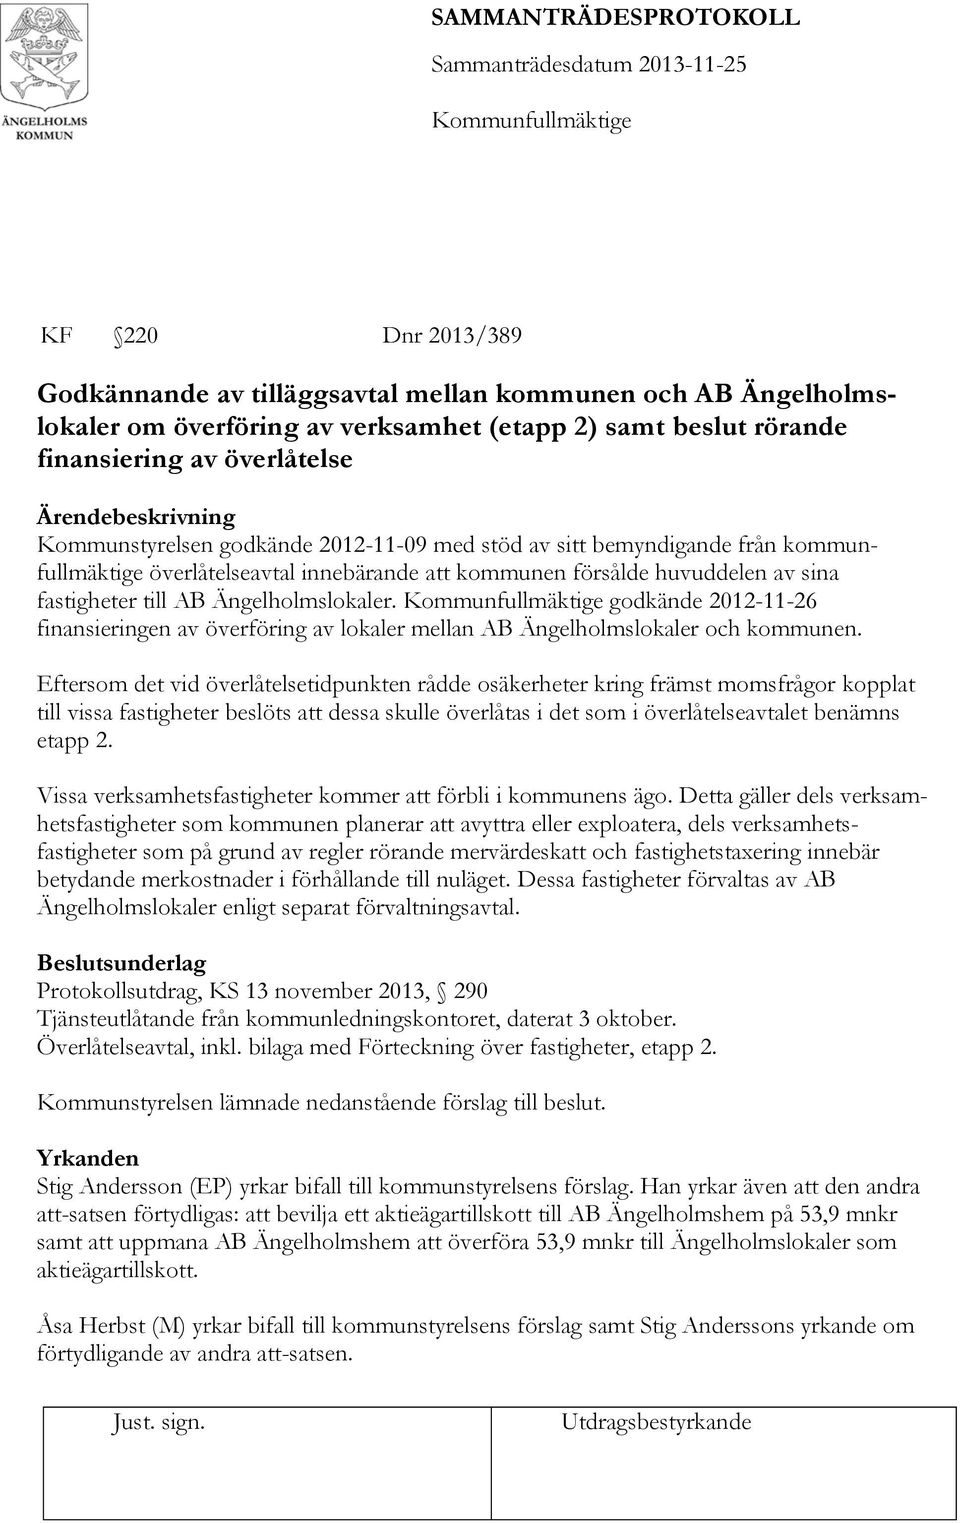 godkände 2012-11-26 finansieringen av överföring av lokaler mellan AB Ängelholmslokaler och kommunen.